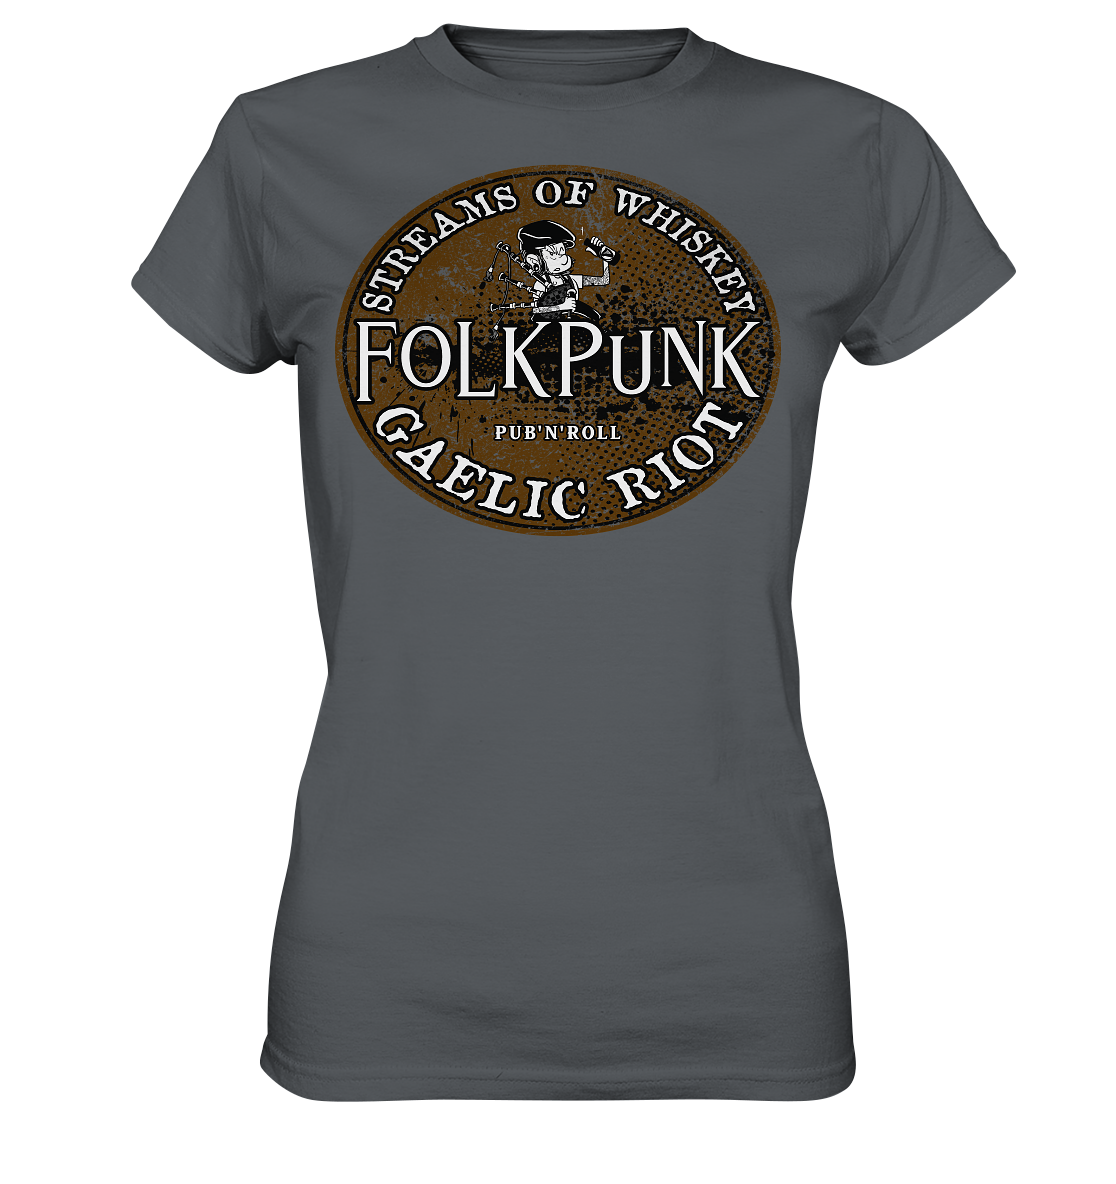 Folkpunk "Streams Of Whiskey" - Ladies Premium Shirt